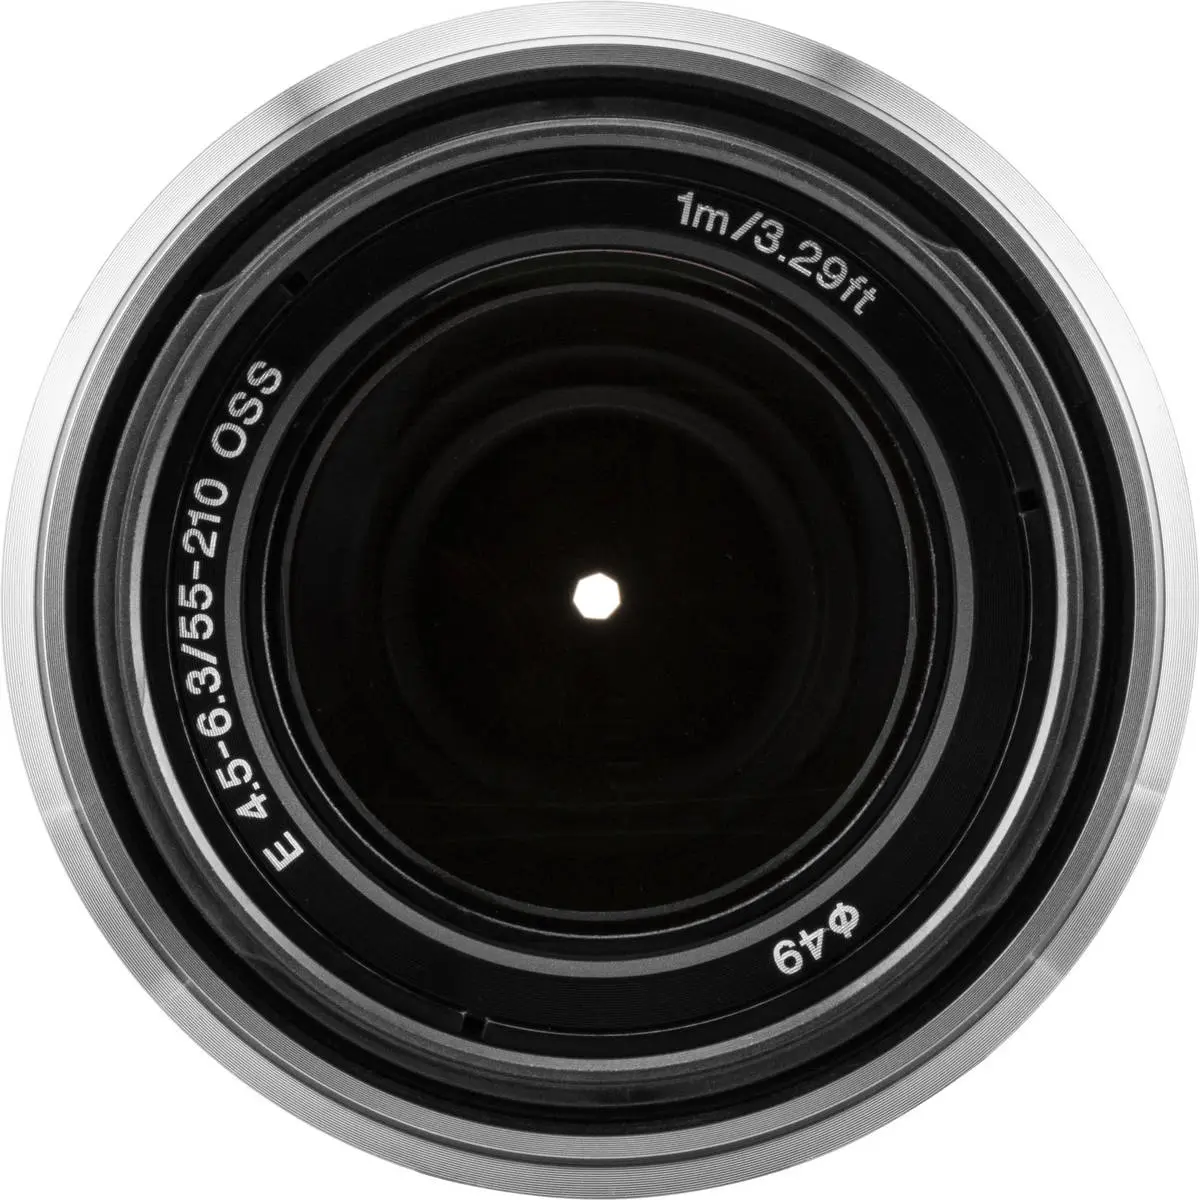 4. Sony E 55-210mm F4.5-6.3 OSS (Silver) Lens